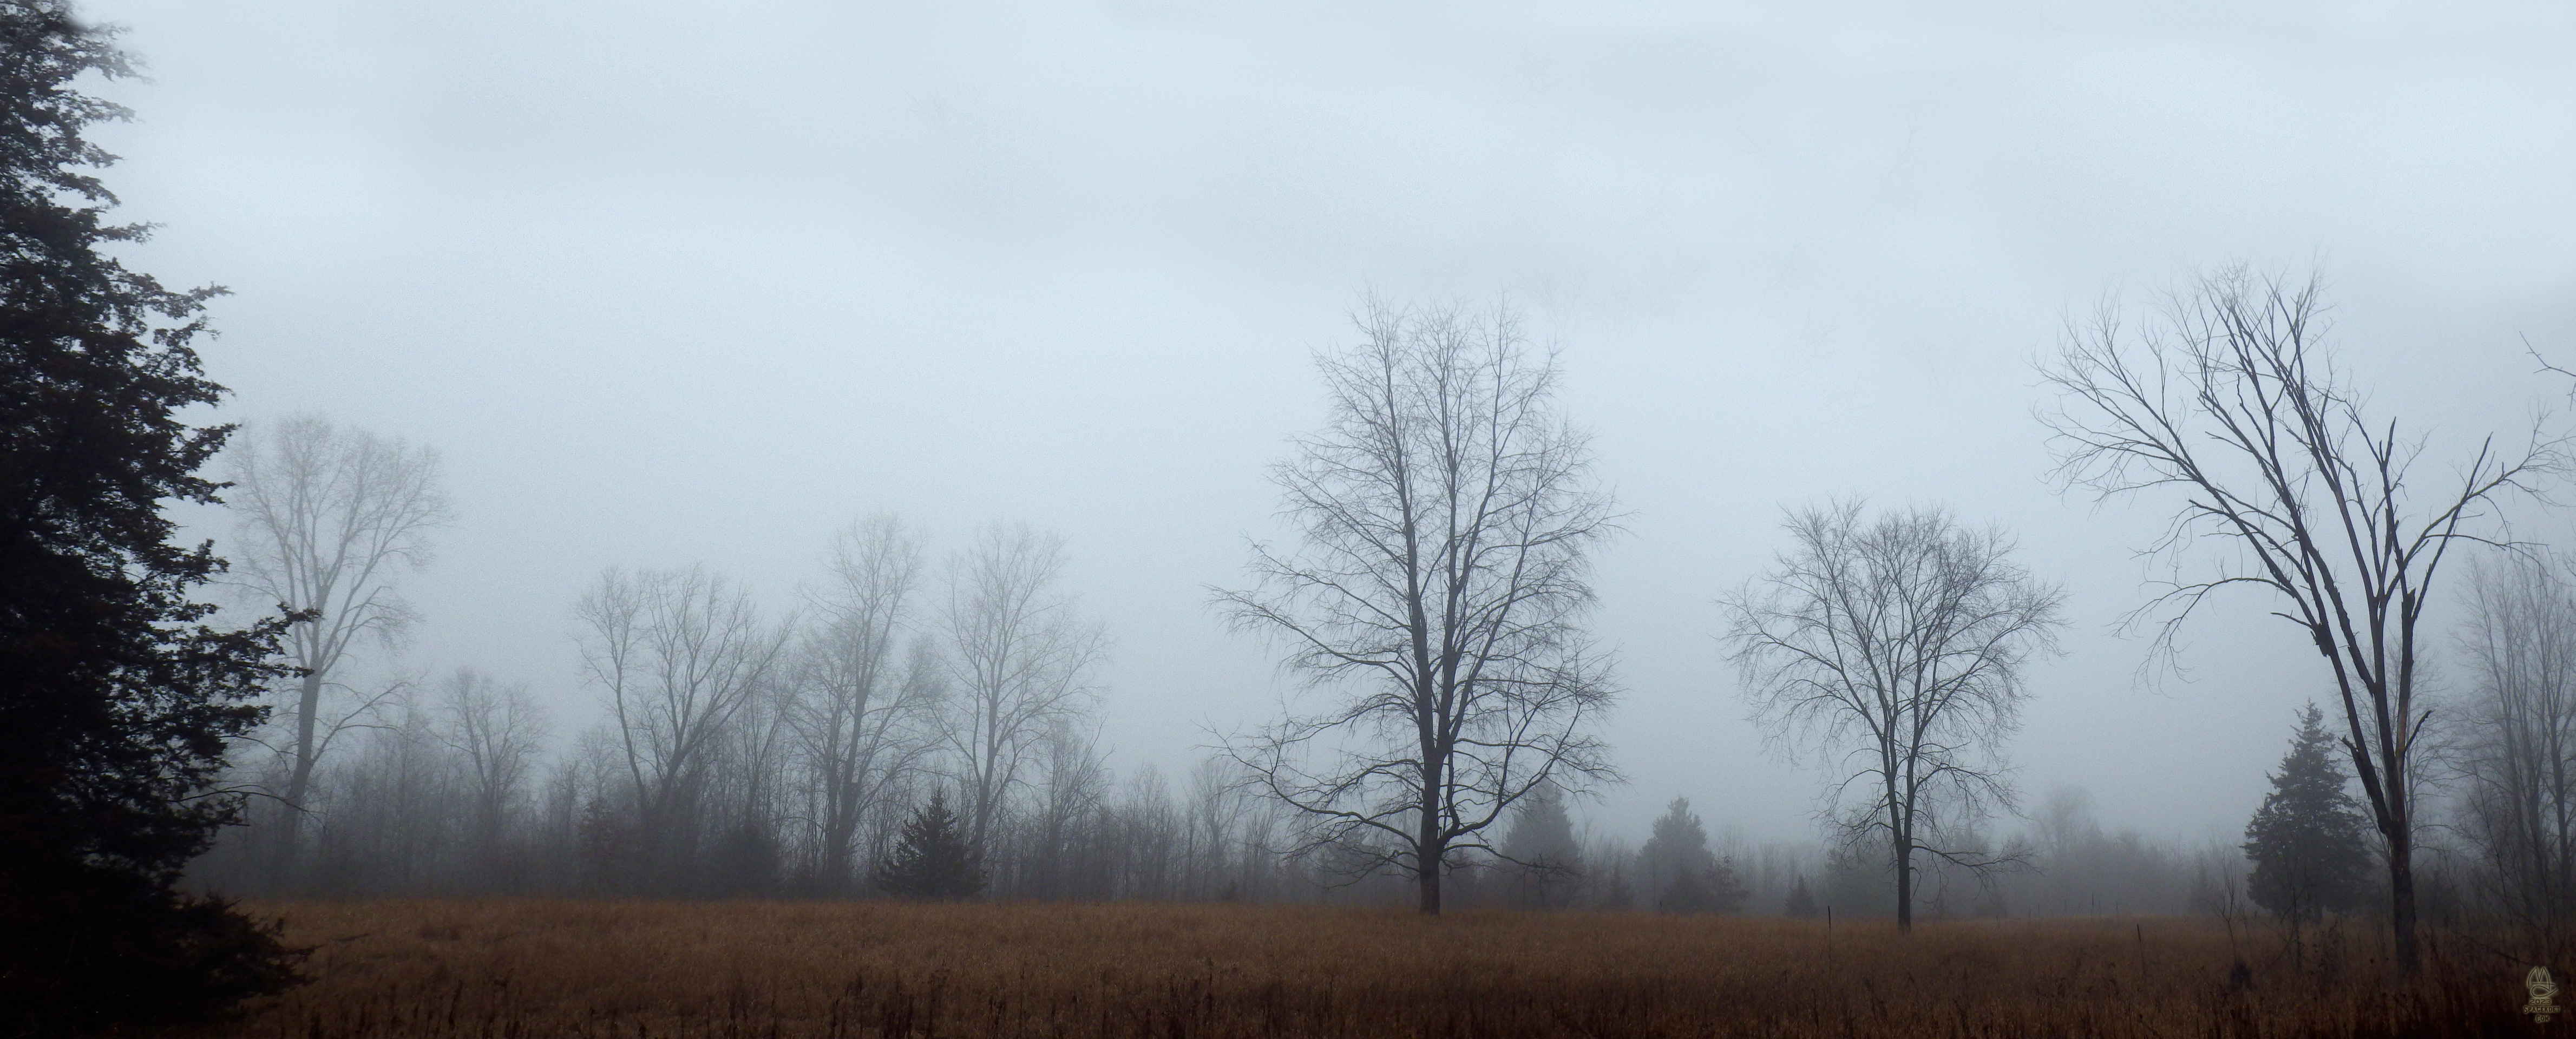 Former farm field, foggy.